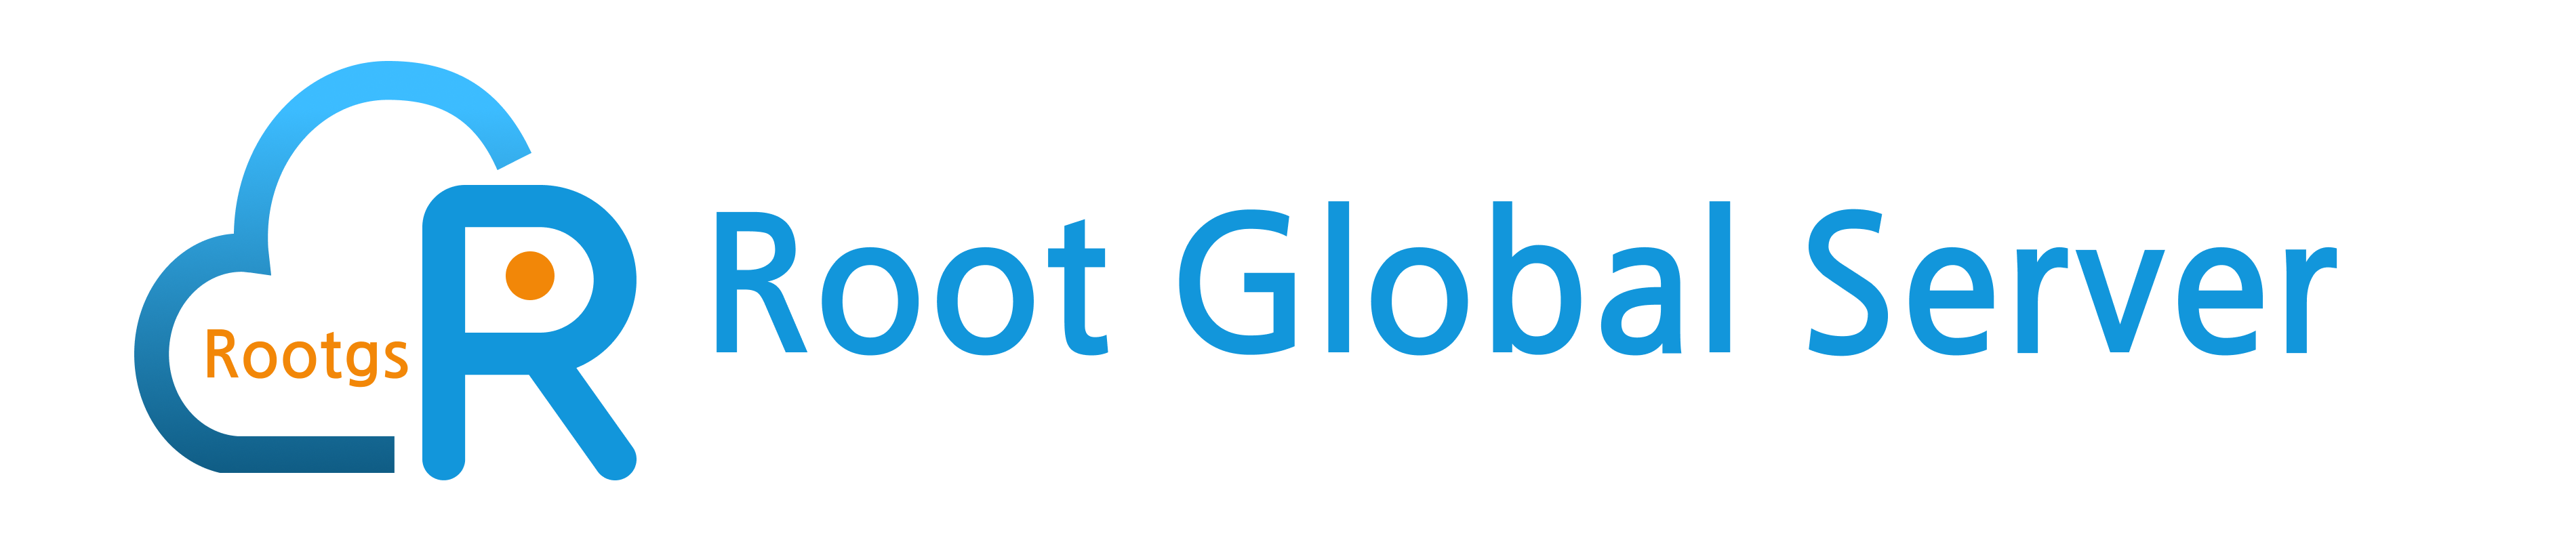 Root Global Server